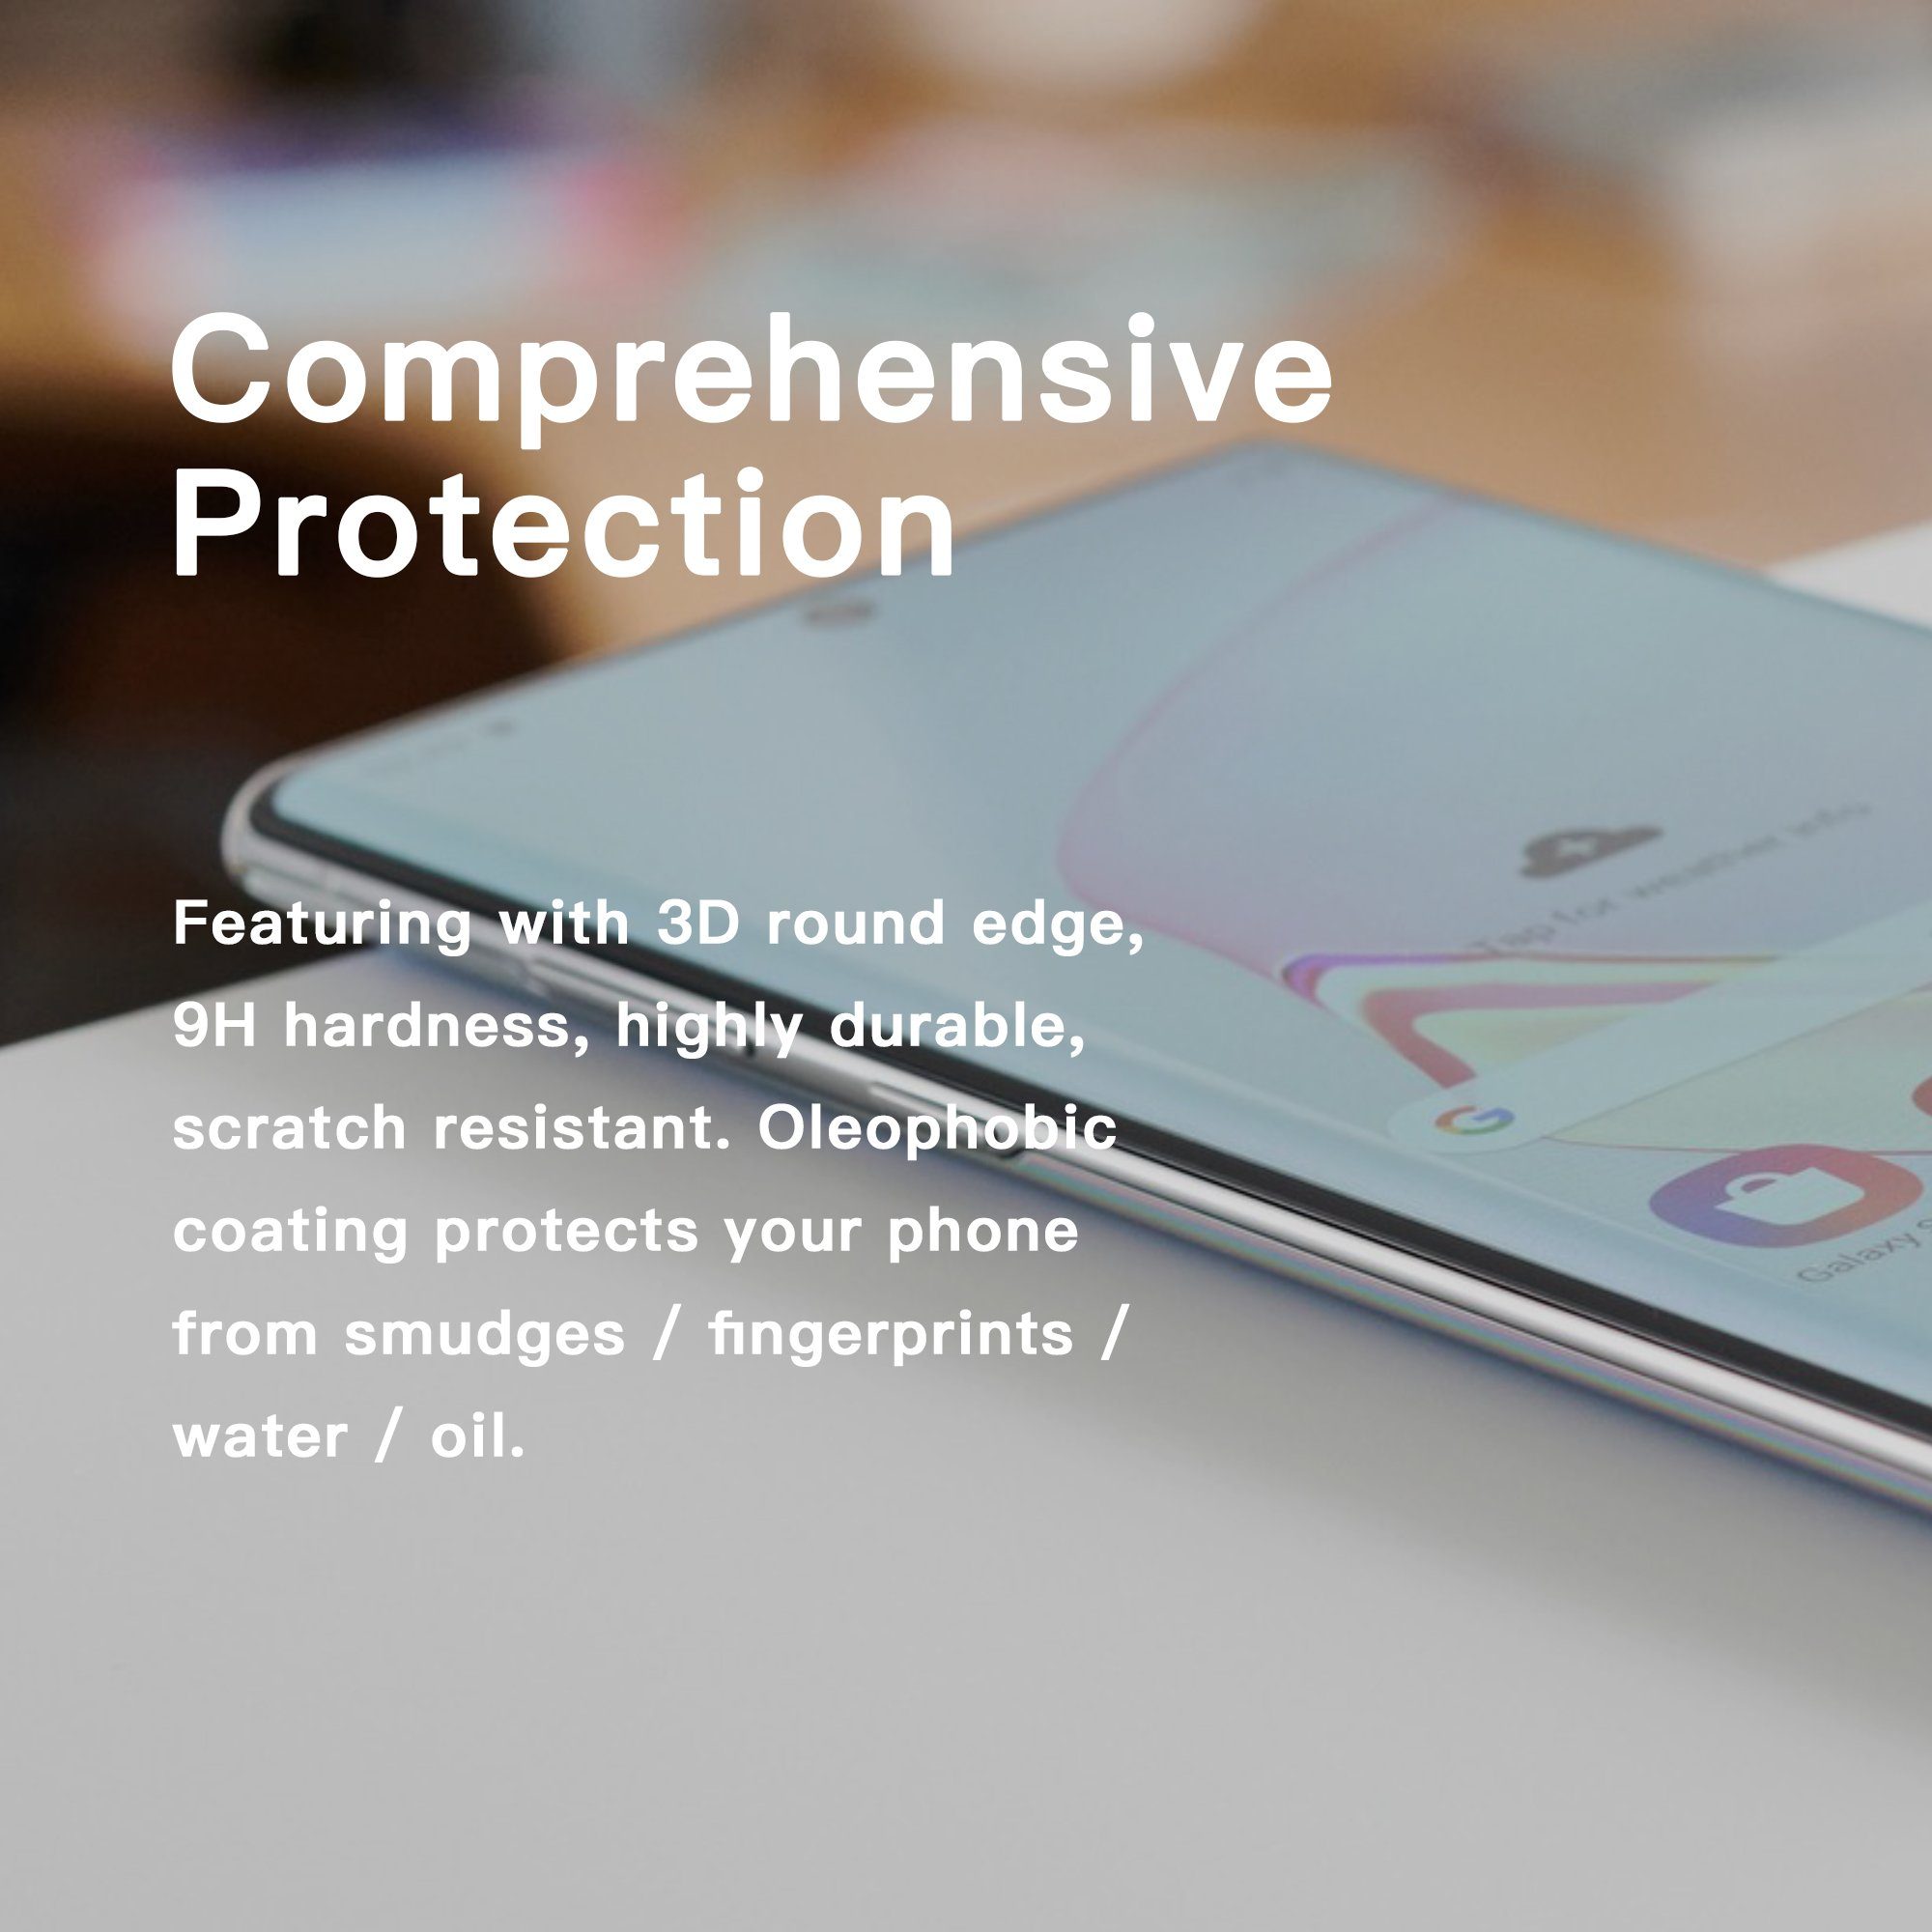 ZEELOT PureGlass 3D LOCA Tempered Glass Screen Protector for Samsung Galaxy Note 20 Ultra, Matte Note 20 Ultra ZEELOT 